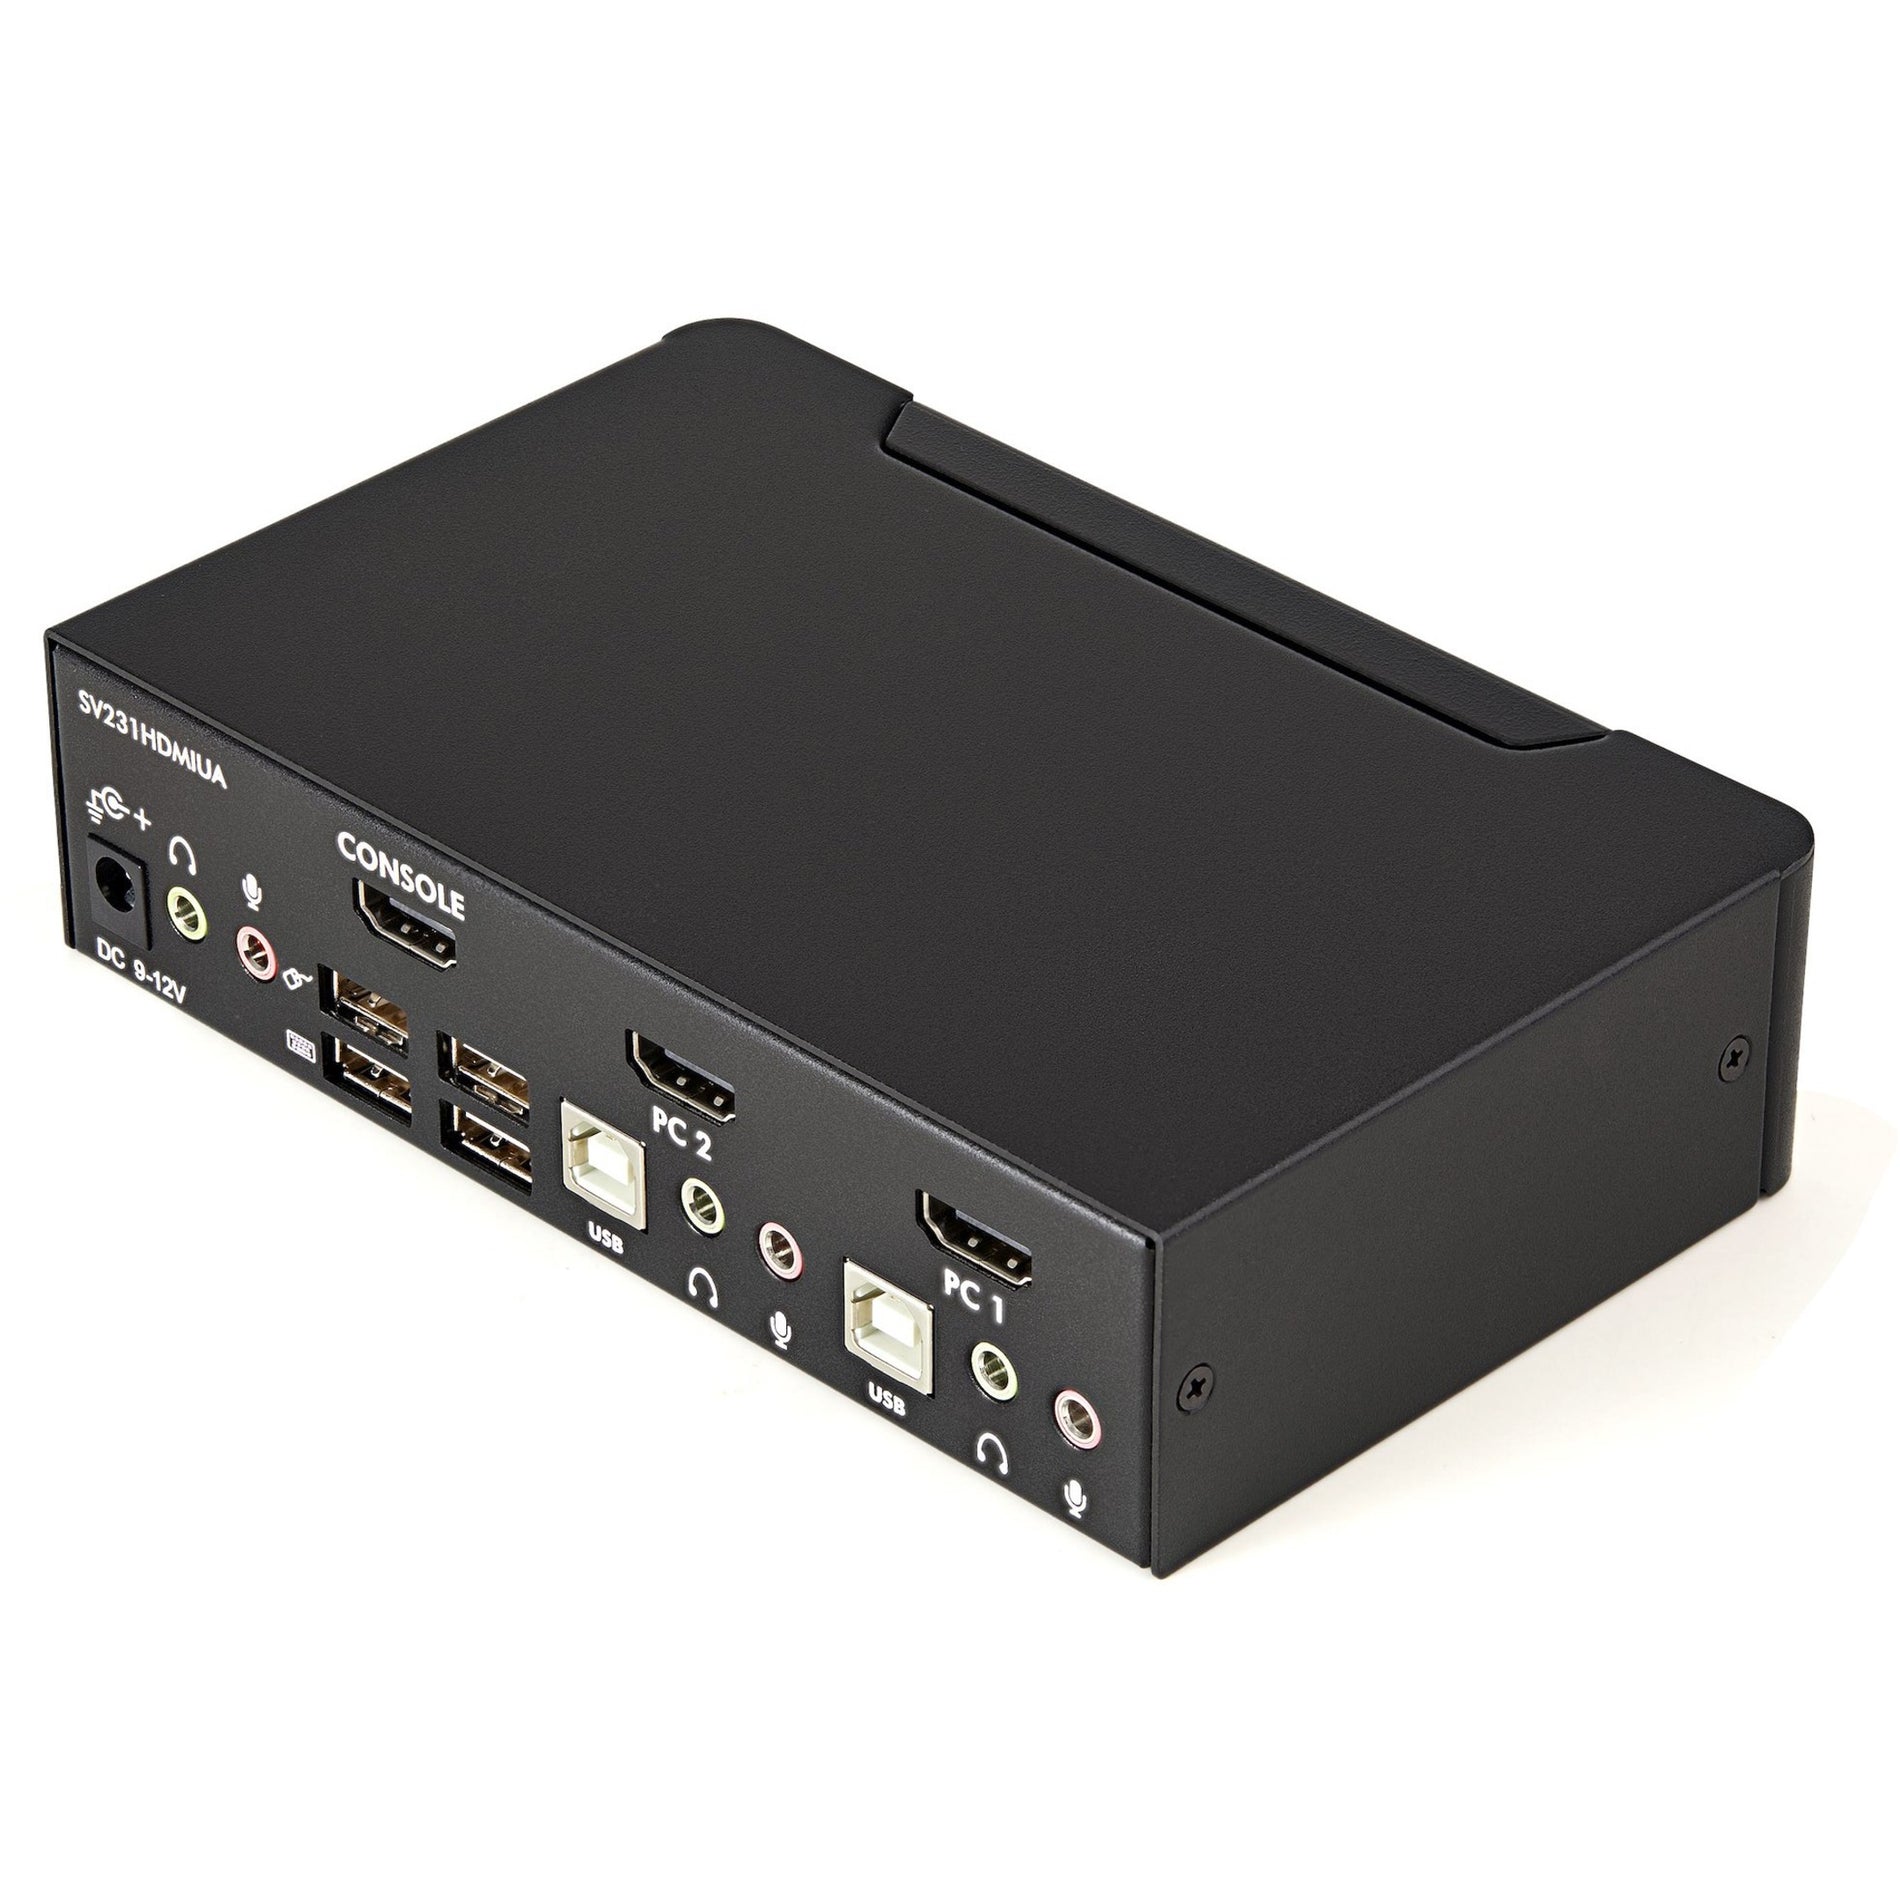 StarTech.com SV231HDMIUA 2-Port USB HDMI KVM Switch mit Audio und USB 2.0 Hub Share Peripherals and Display zwischen Spielekonsole und PC